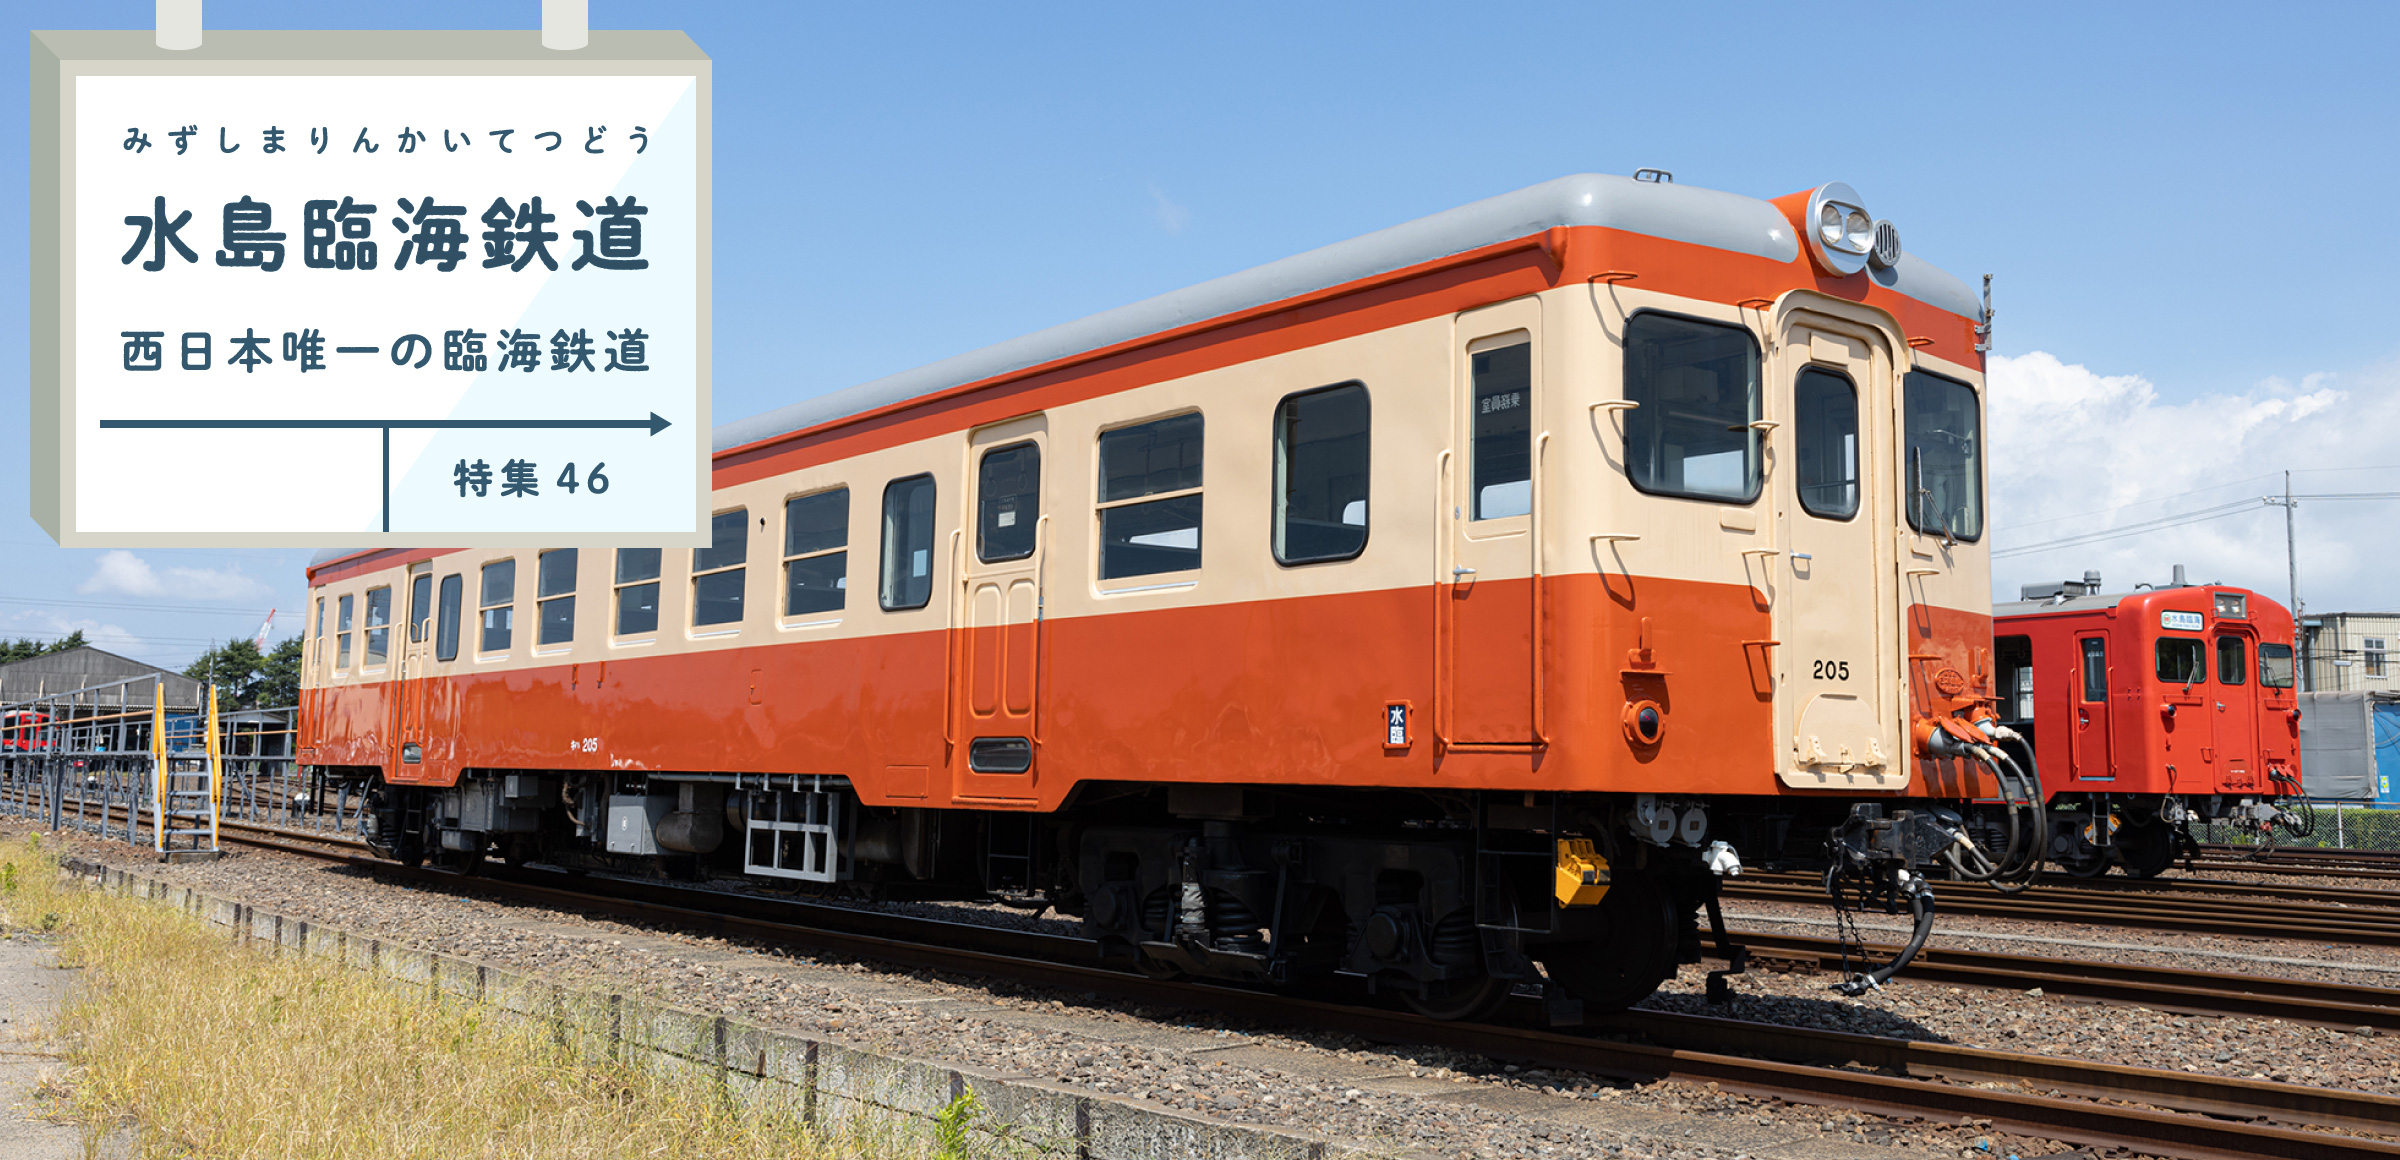 特集46 水島臨海鉄道 西日本唯一の臨海鉄道 レジェンド車両「キハ205」の復活への道のり